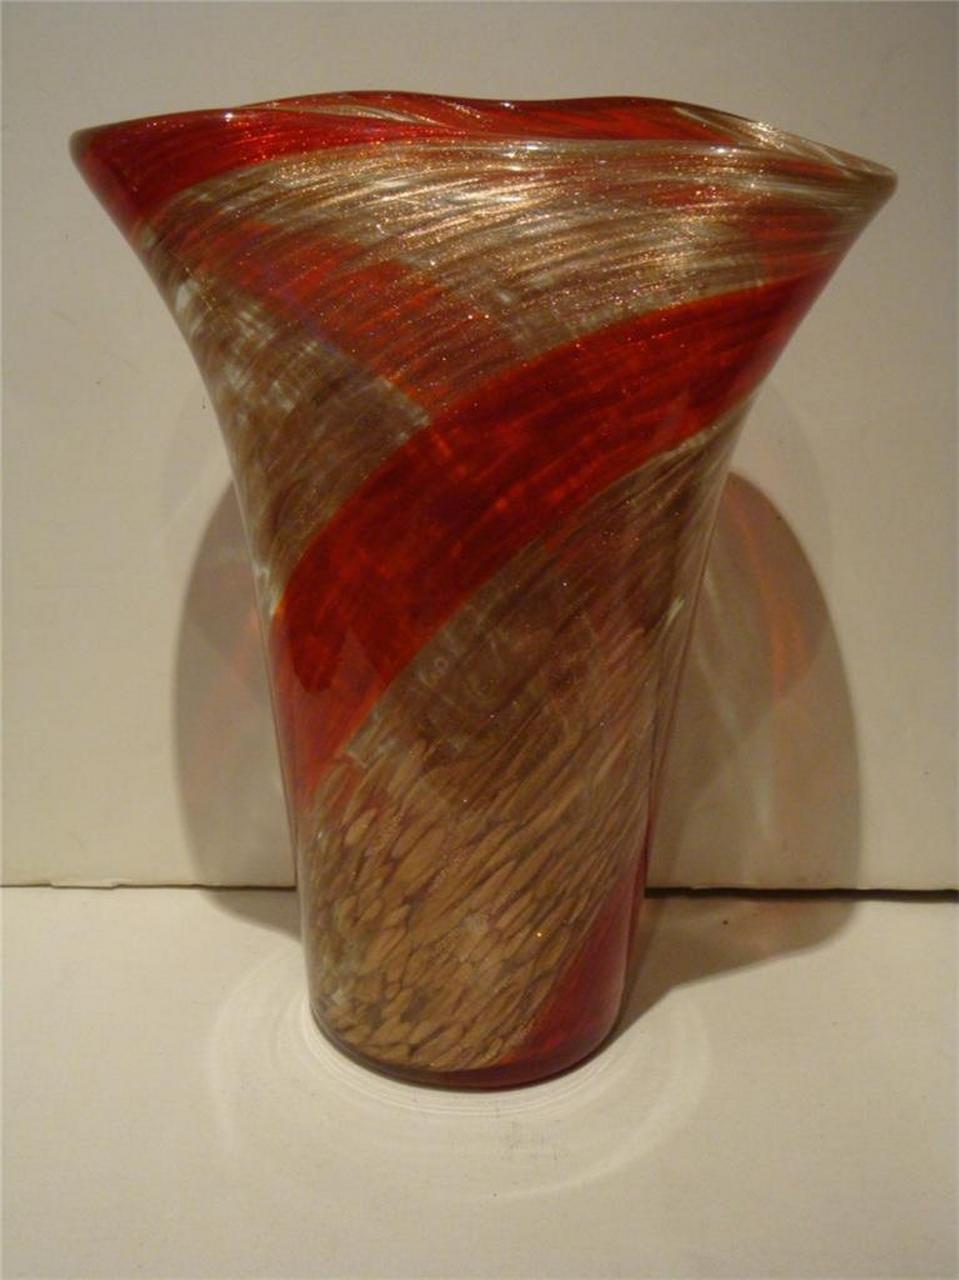 Der folgende Artikel, den wir anbieten, ist diese seltene wichtige Nachlass Aureliano Toso Dino Martens Spirale Vase. Die schöne Vase aus Klarglas ist innen mit zufälligen Spritzern aus goldfarbenem Aventurin verziert, die von einer breiten Spirale